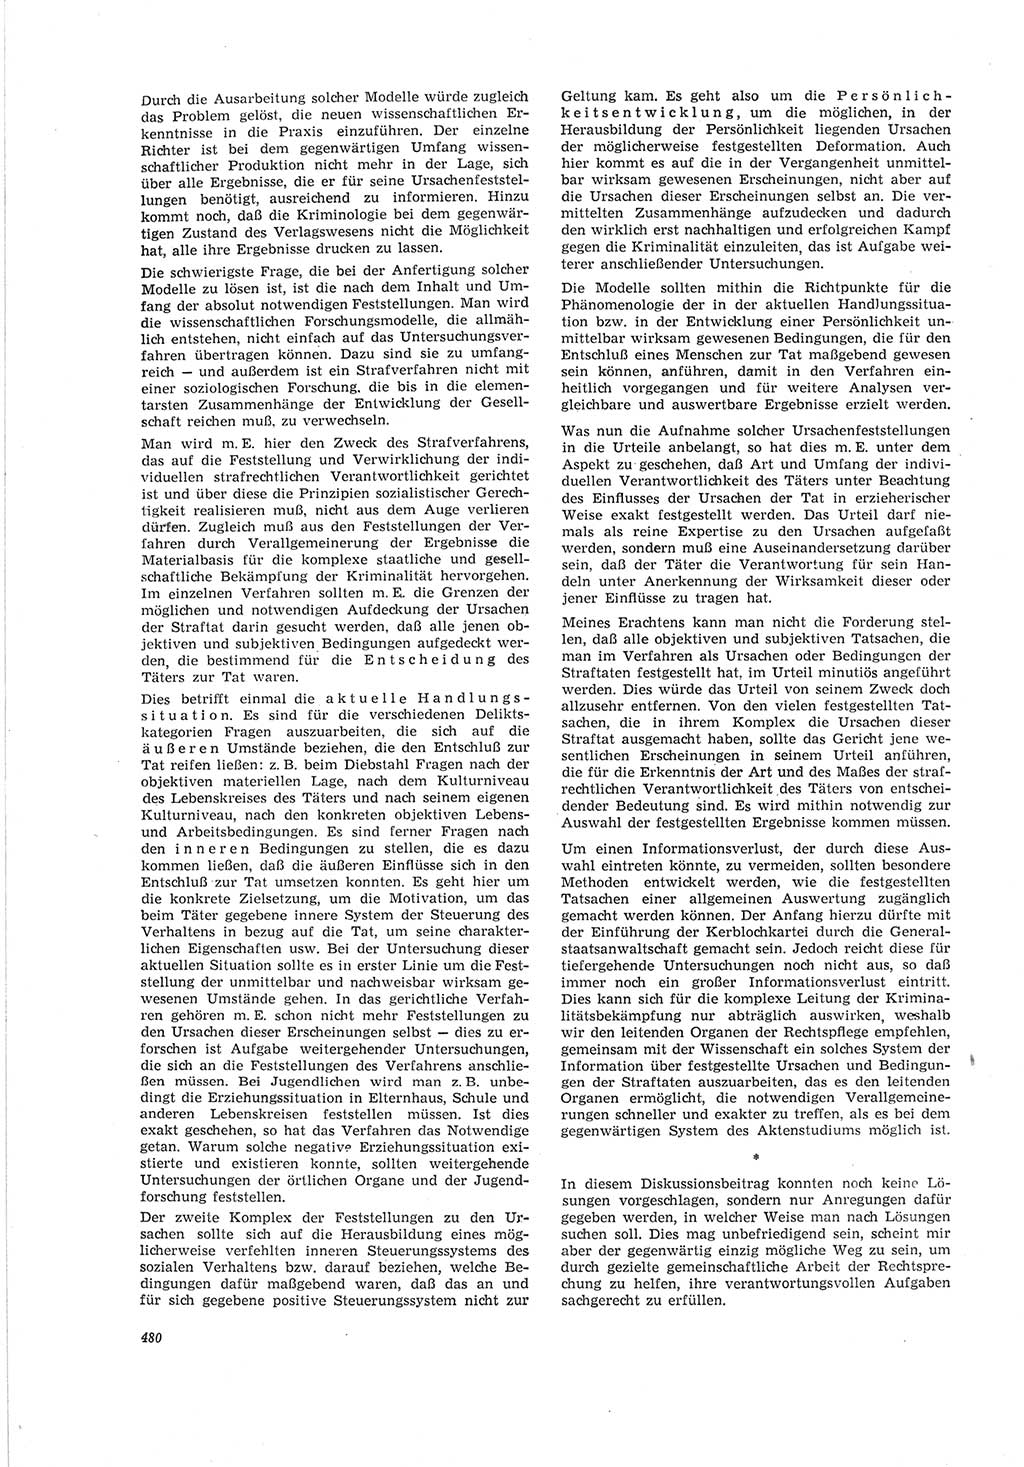 Neue Justiz (NJ), Zeitschrift für Recht und Rechtswissenschaft [Deutsche Demokratische Republik (DDR)], 19. Jahrgang 1965, Seite 480 (NJ DDR 1965, S. 480)